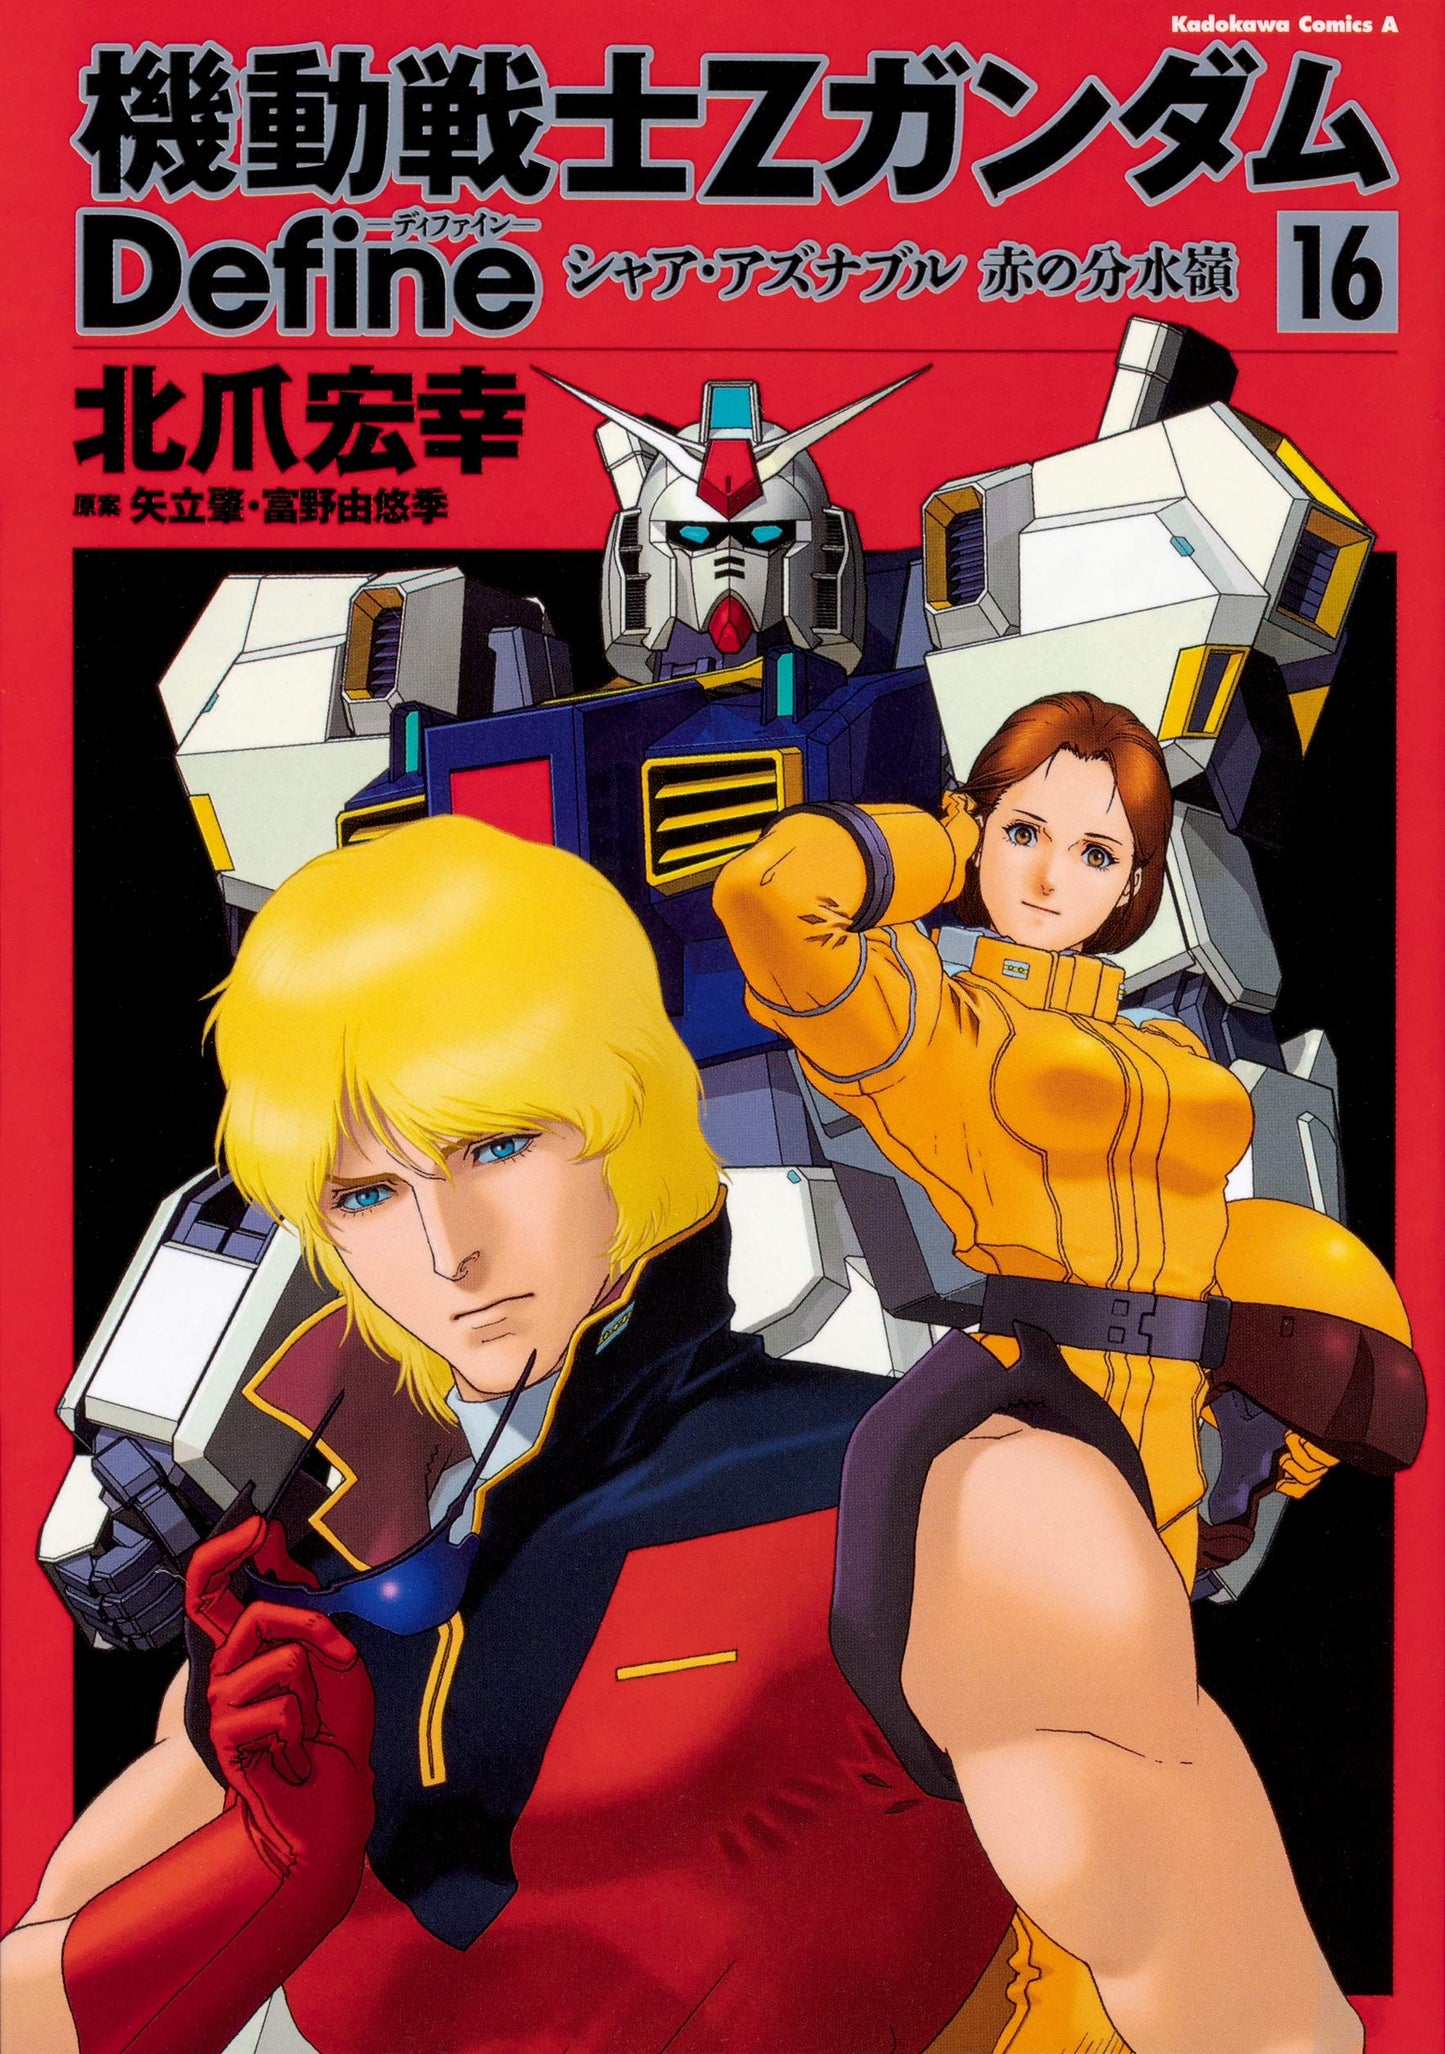 Mobile Suit Zeta Gundam Define #16 / Comic